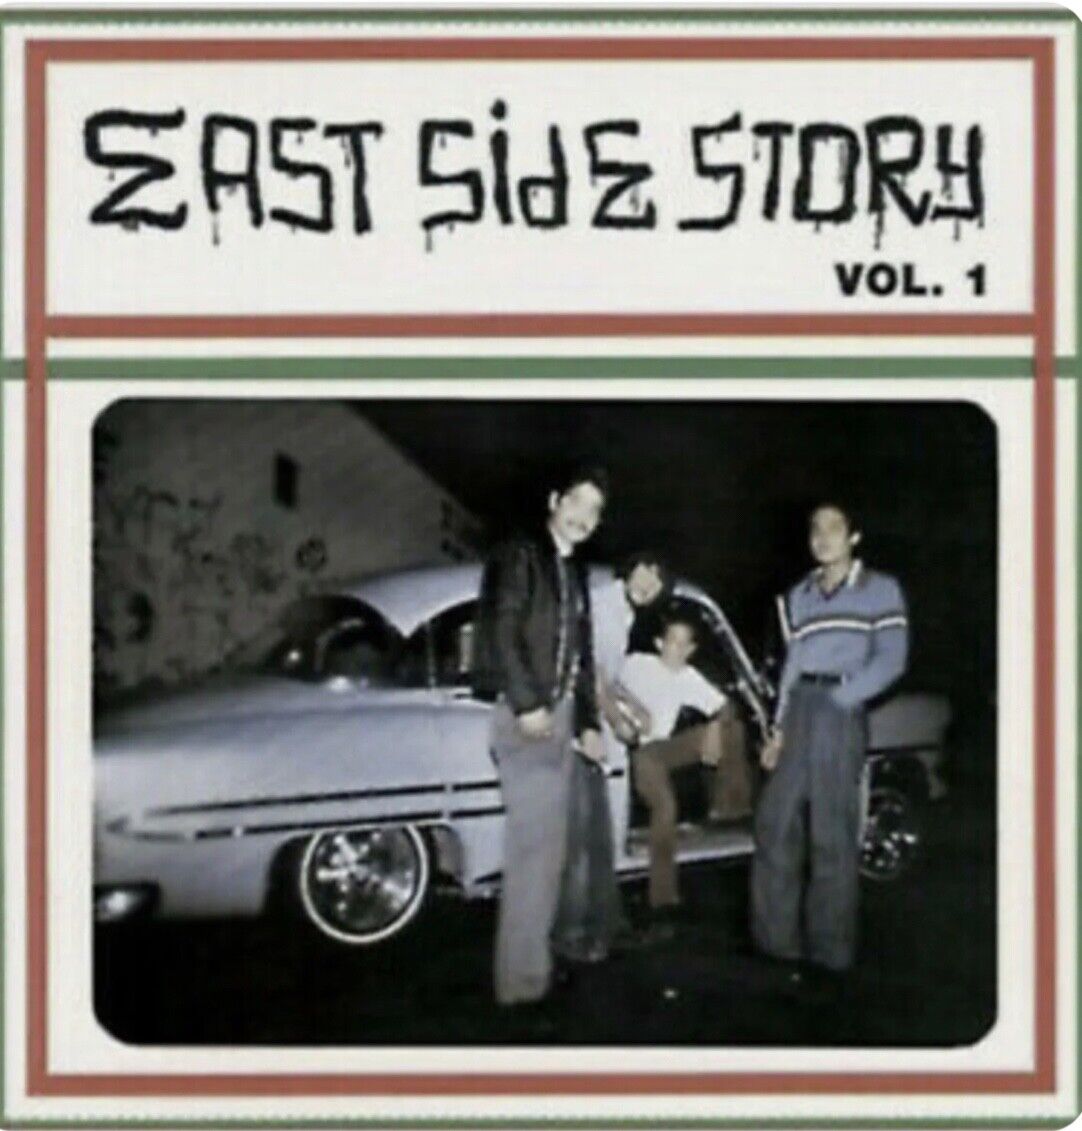 East Side Story Volume 1 12” Vinyl